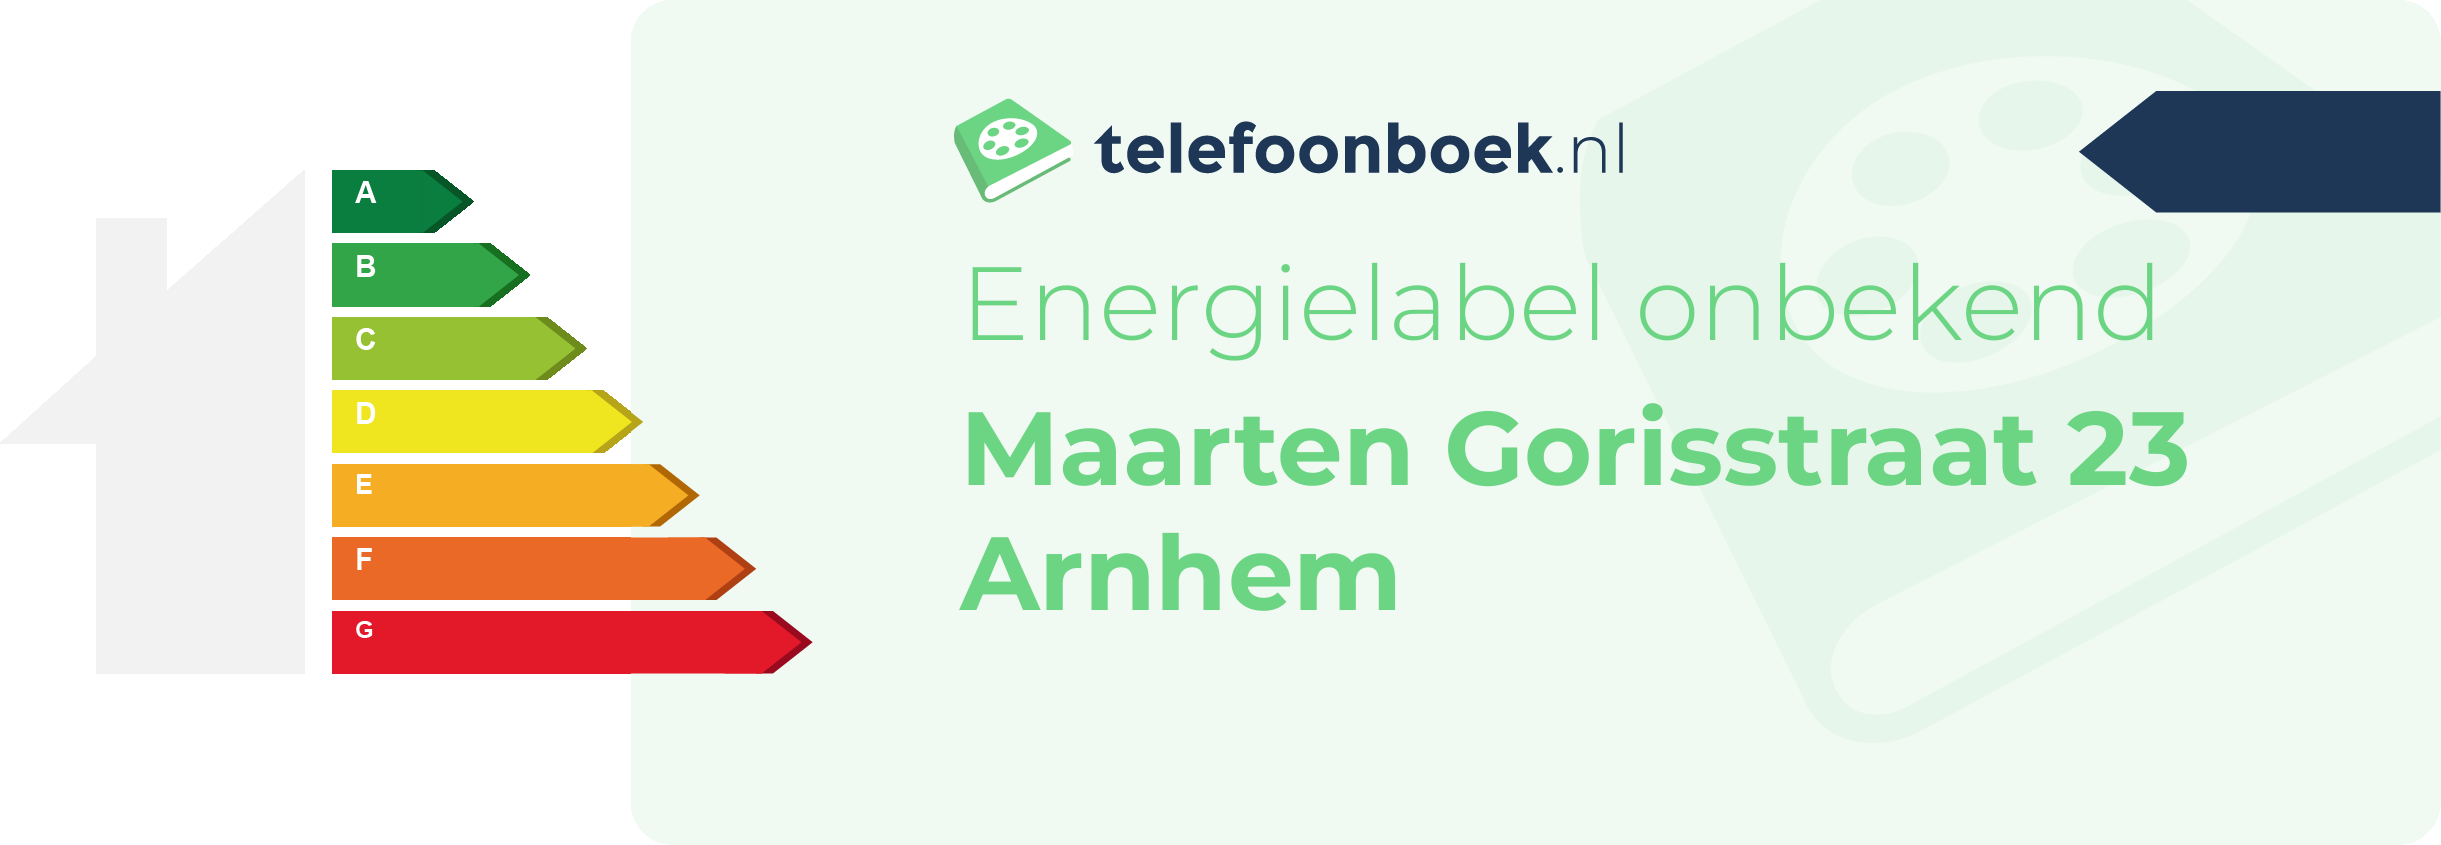 Energielabel Maarten Gorisstraat 23 Arnhem